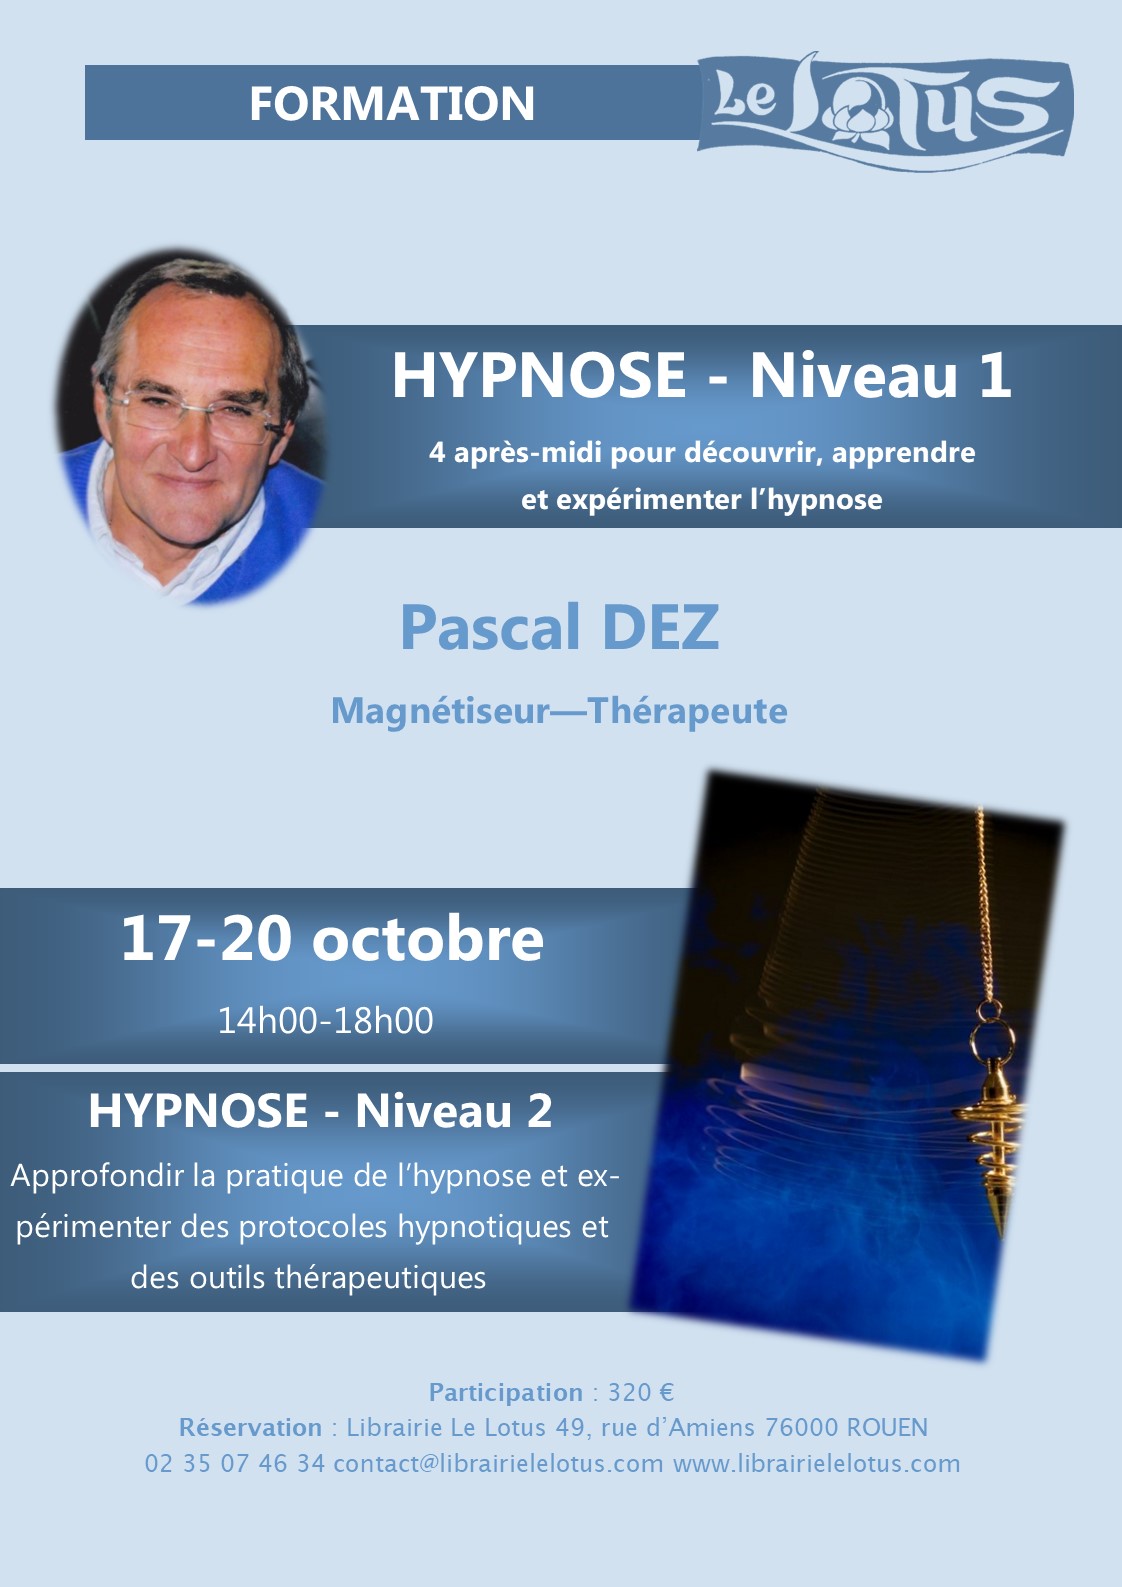 FORMATION DE 4 JOURS - HYPNOSE - NIVEAU 1